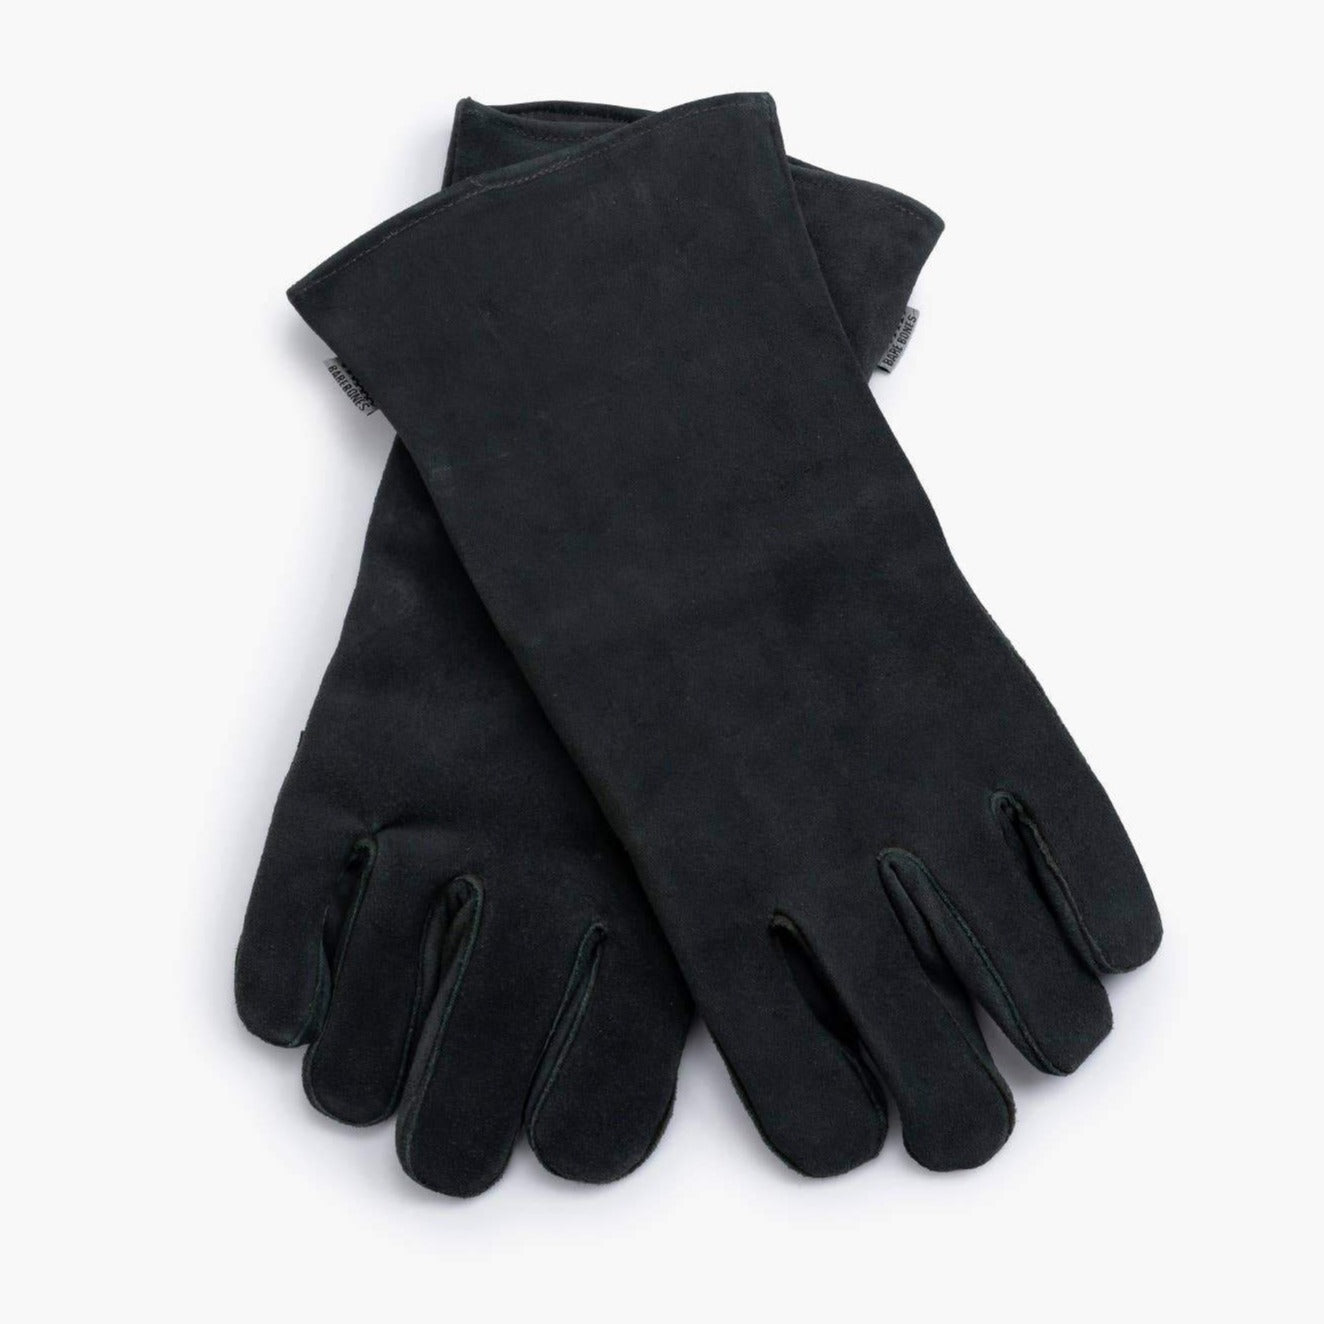 Barebones | Open Fire Gloves, Fire, Barebones, Defiance Outdoor Gear Co.